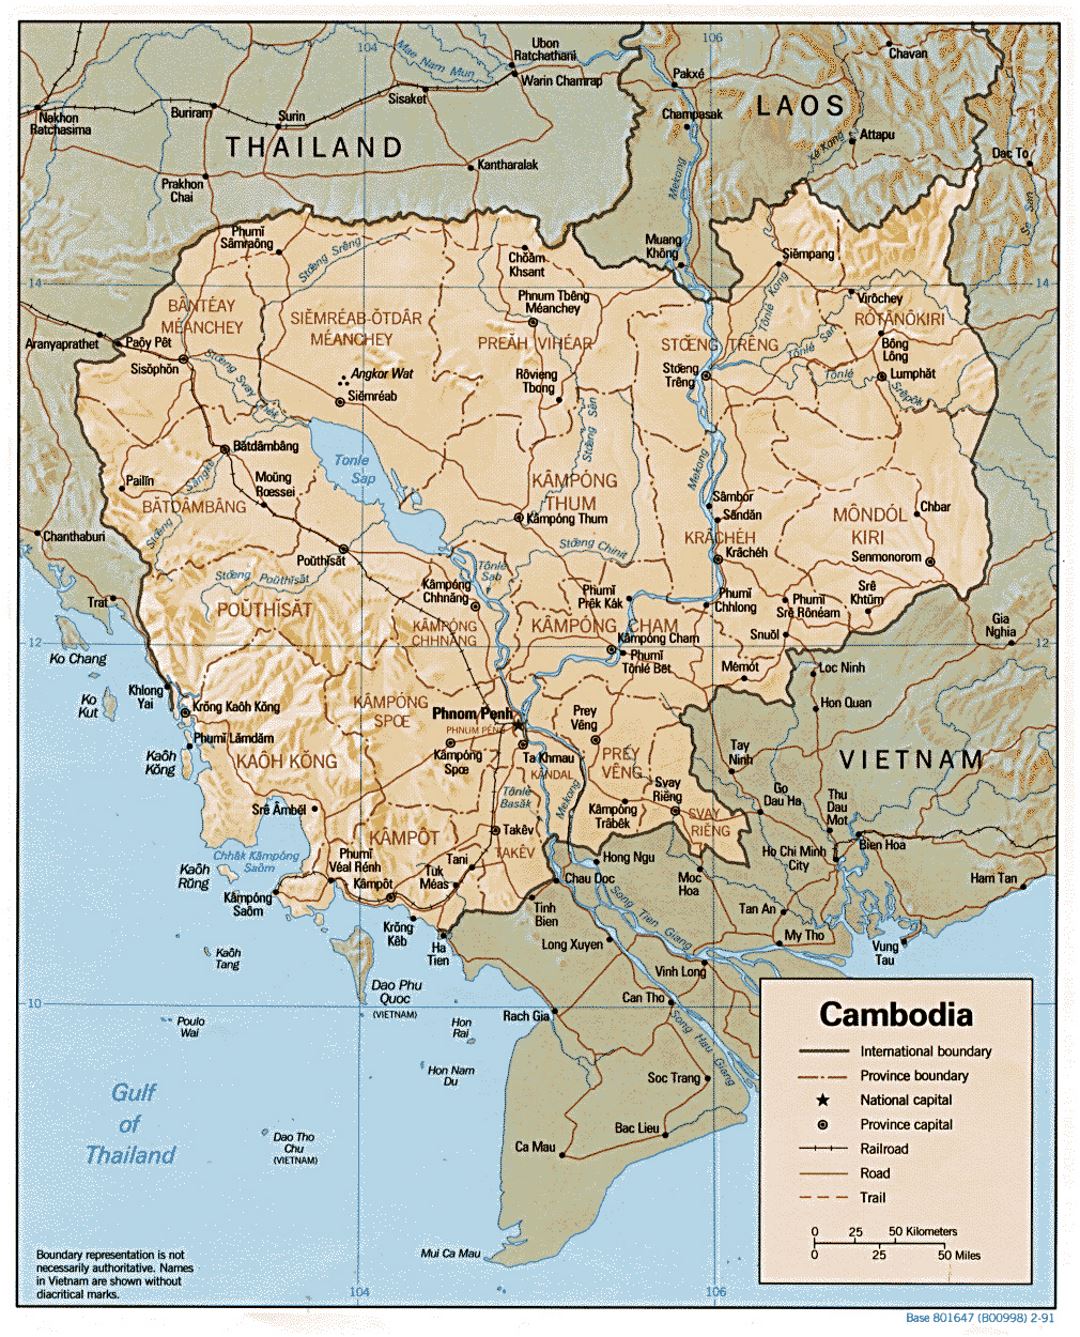 Detallado mapa político y administrativo de Camboya con relieve, carreteras, ferrocarriles y principales ciudades - 1991